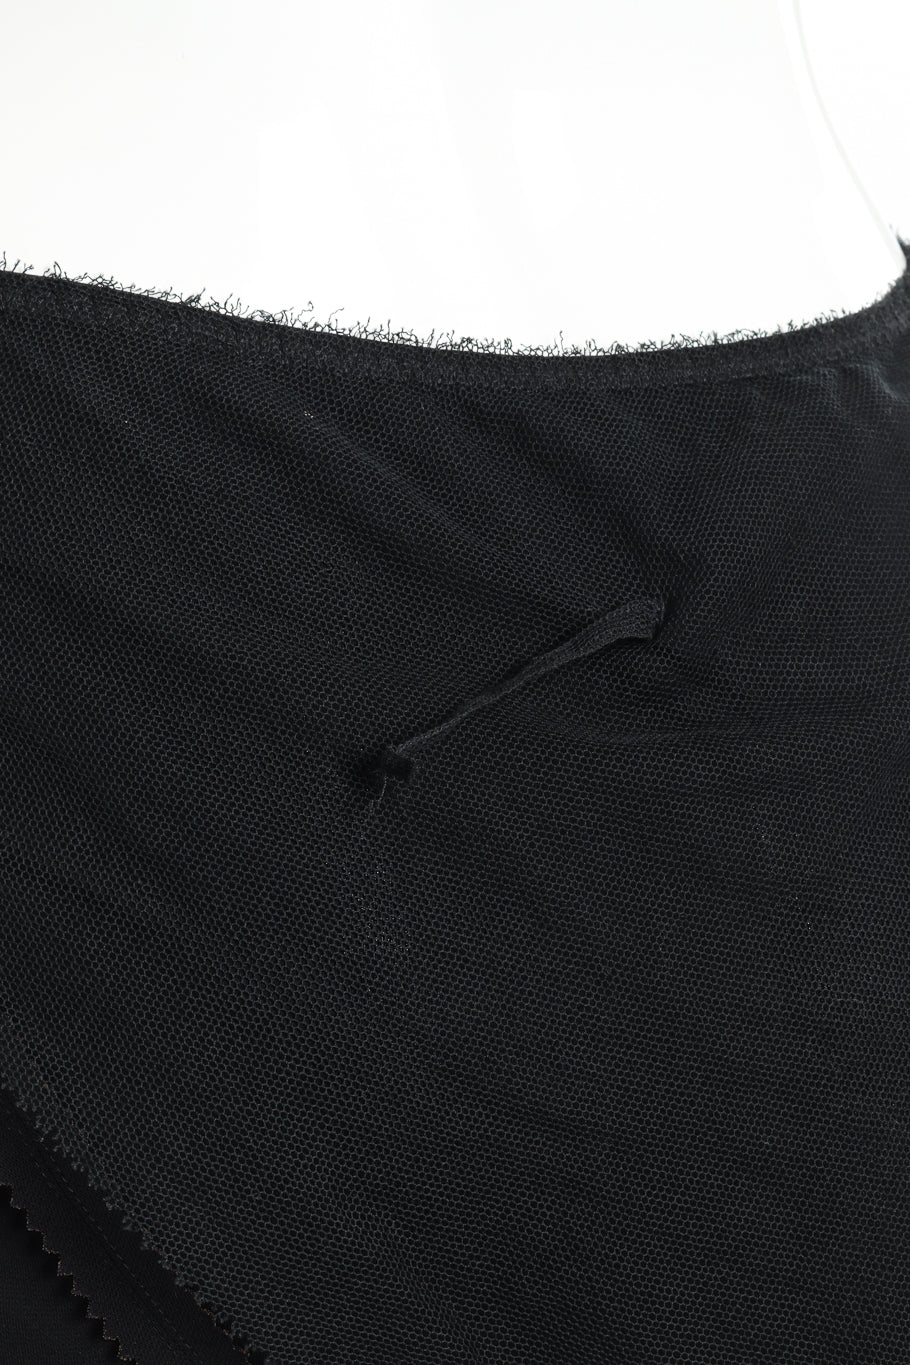 Jean Paul Gaultier Femme Mesh Overlay Ruffle Skirt detached loop @recessla